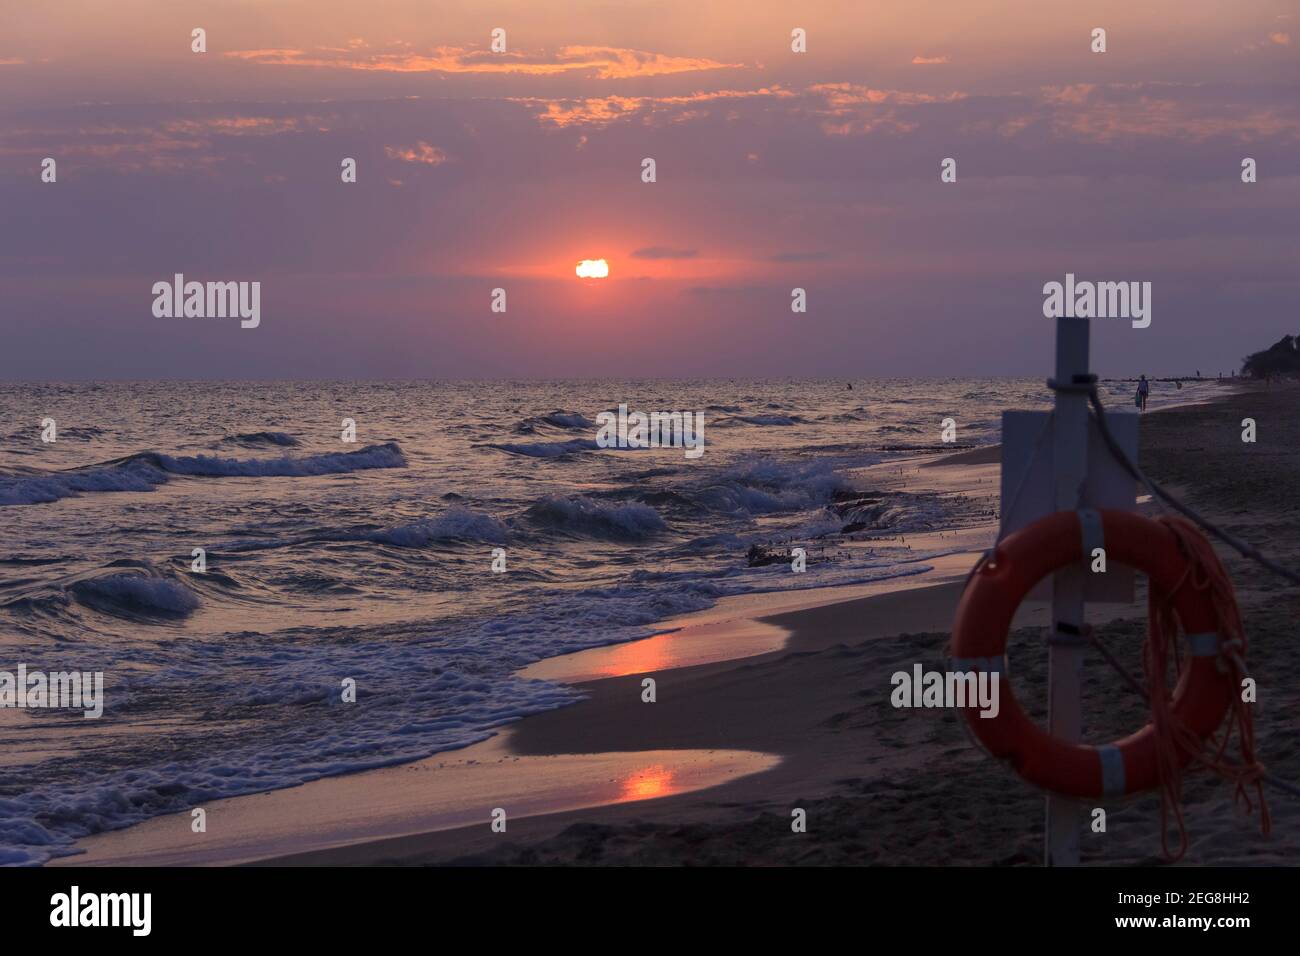 En été : coucher de soleil sur la plage. Plage de Torre Mozza, Pouilles en Italie. Banque D'Images